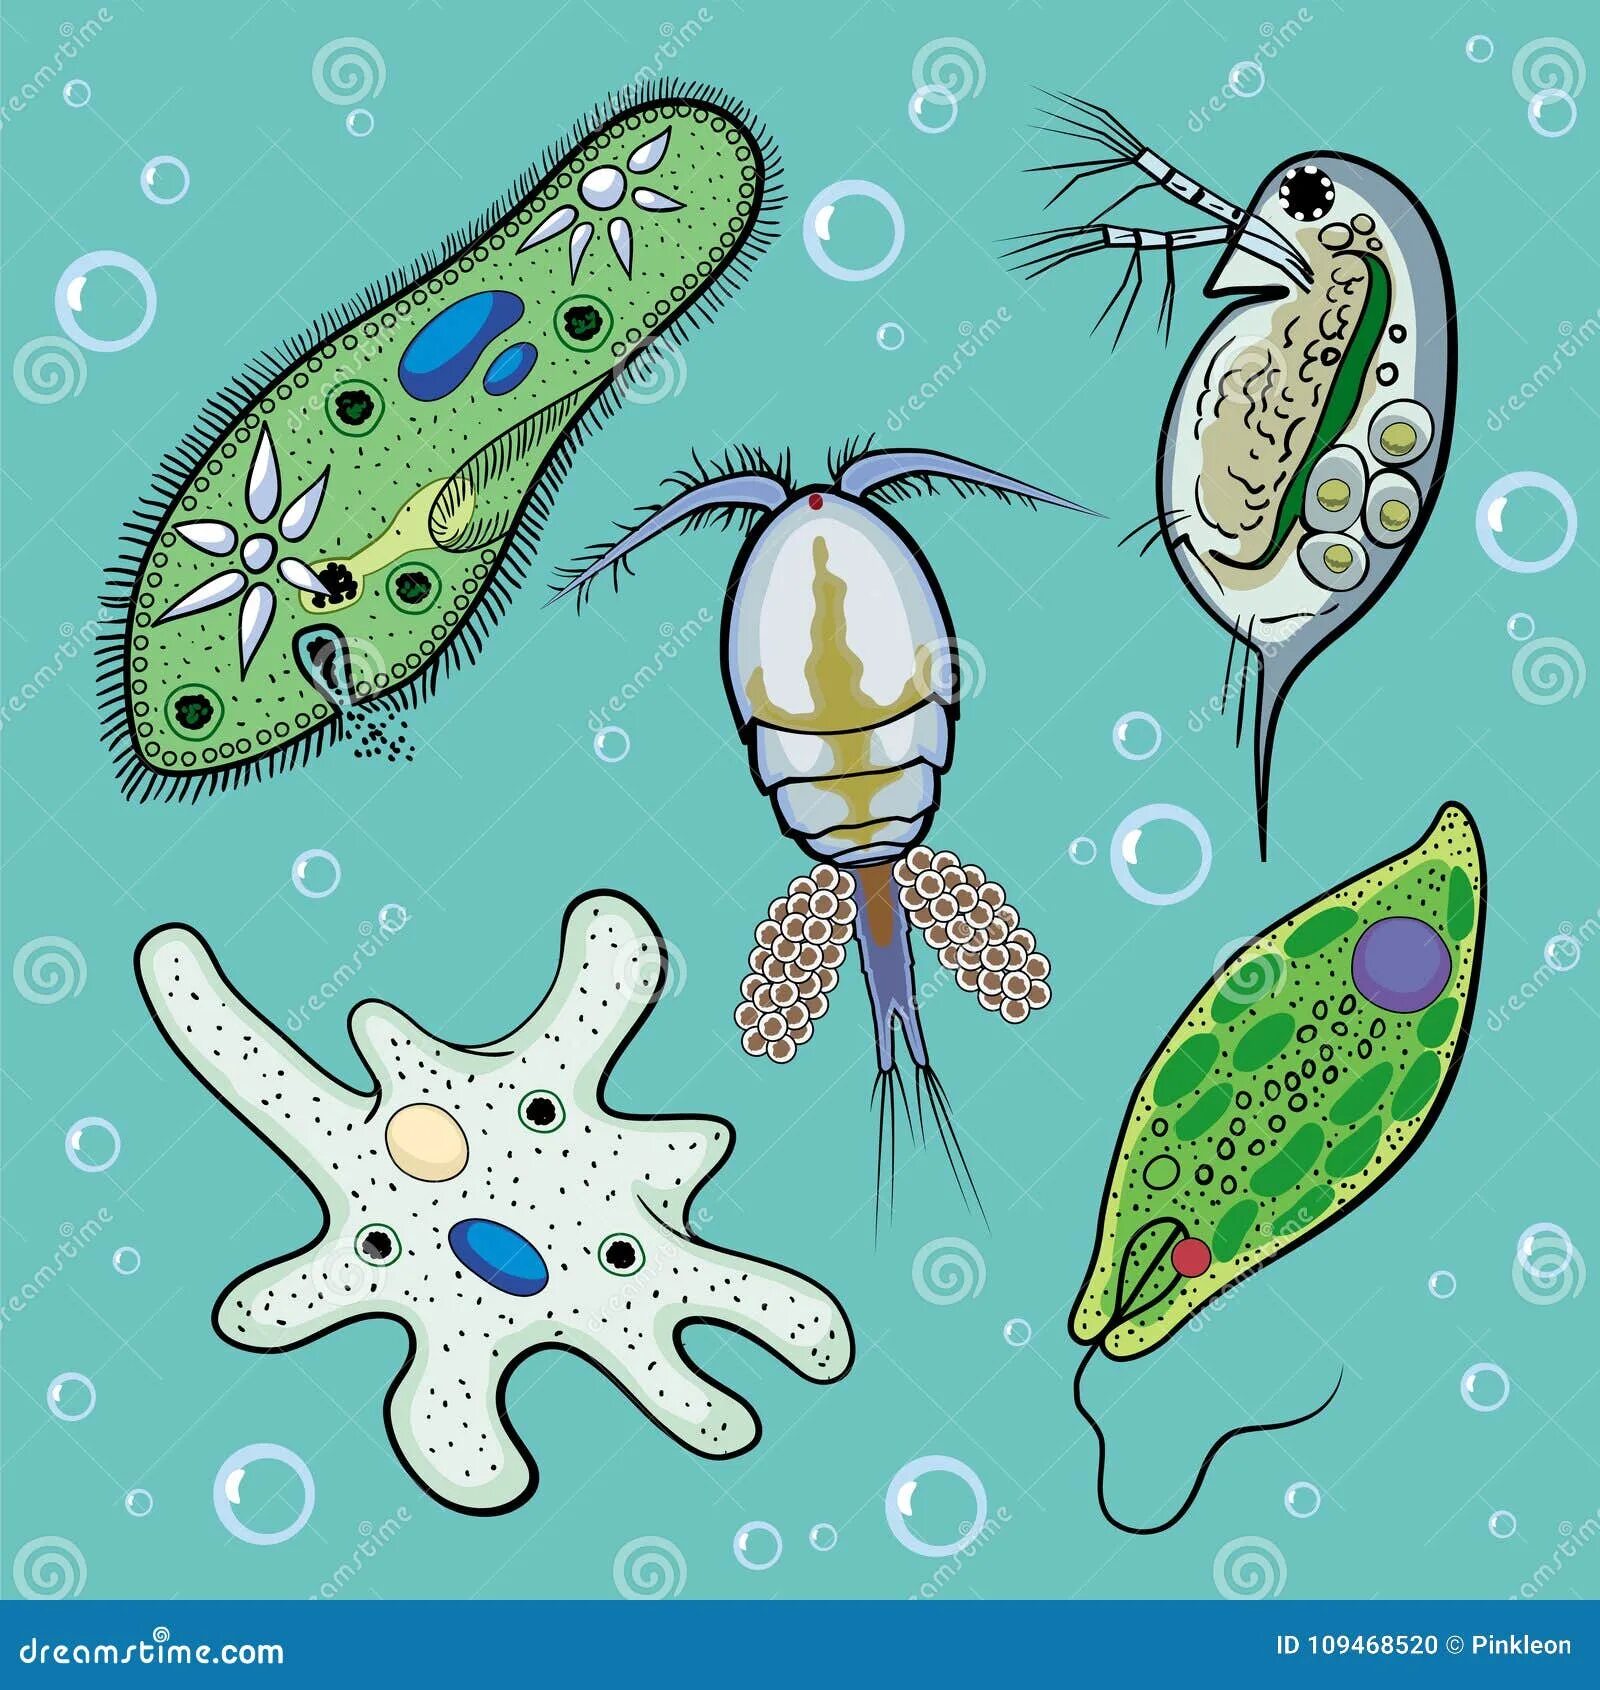 Циклоп одноклеточное. Простейшие организмы. Циклоп одноклеточный организм. Рисунки простейших по биологии.